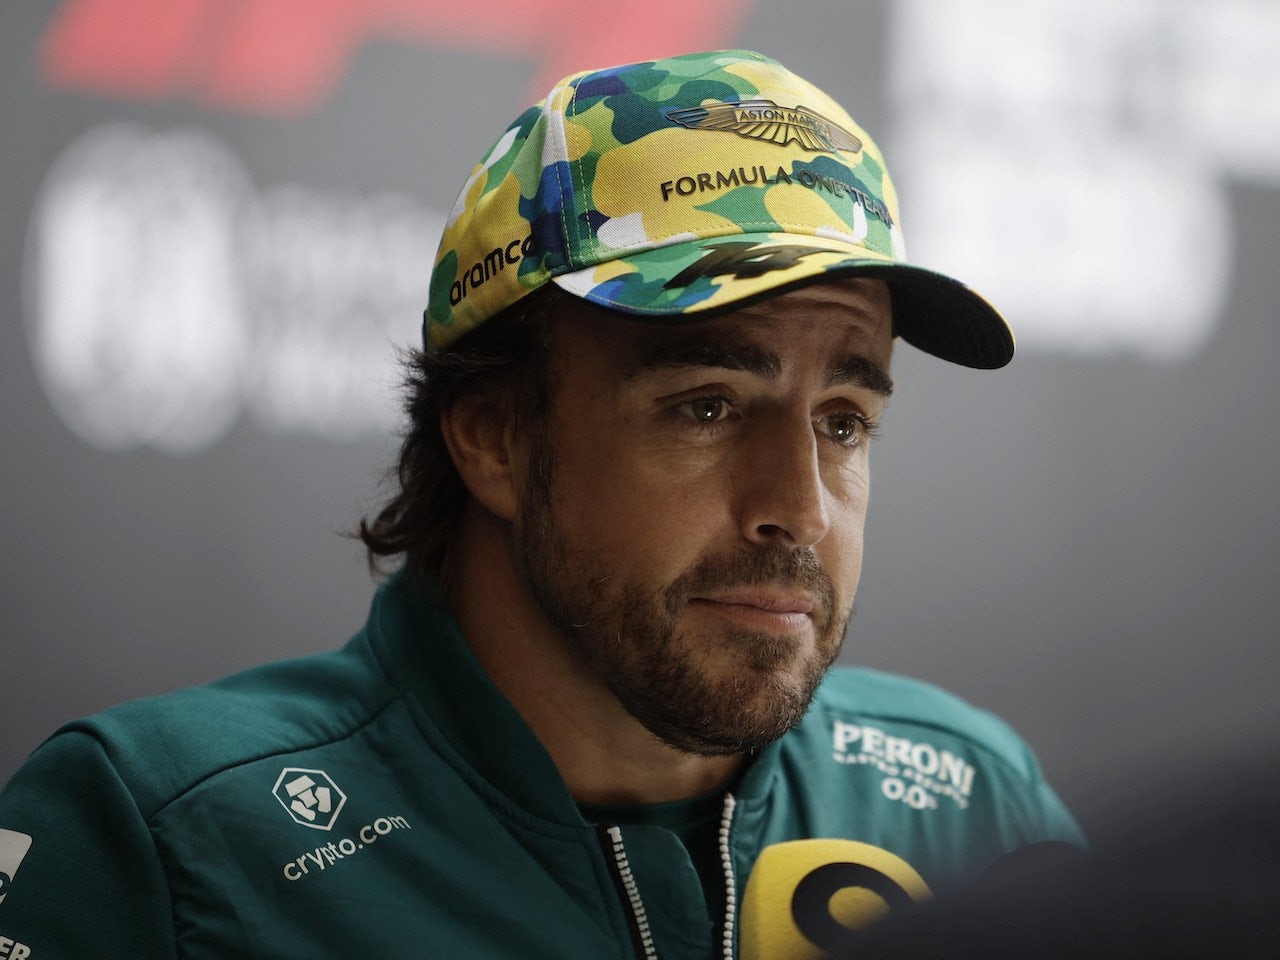 Alonso's mentor Briatore criticises Aston Martin's progress